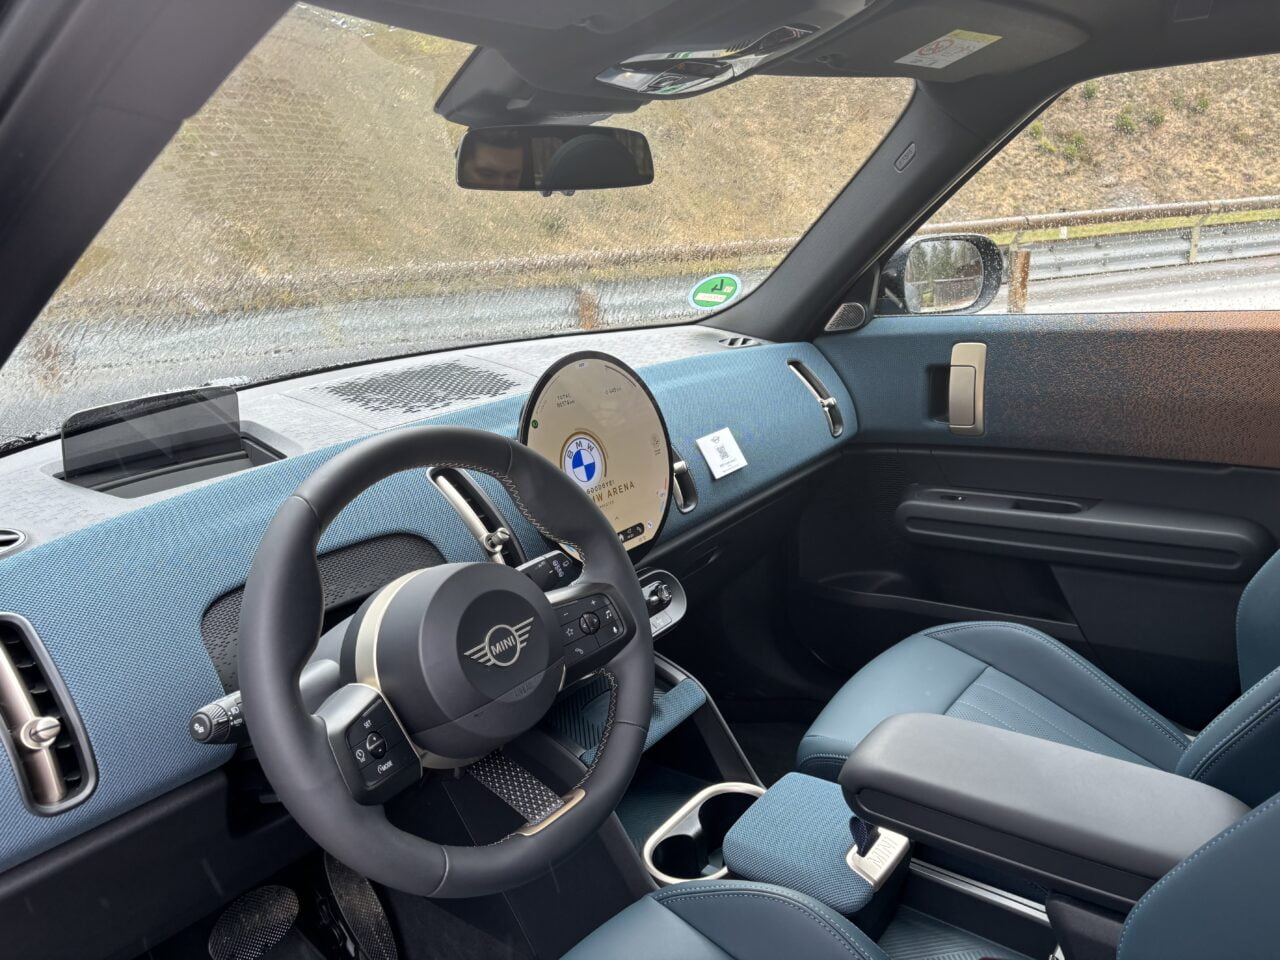 Wnętrze samochodu osobowego z widoczną kierownicą z emblematem Mini, niebieskimi fotelami, deska rozdzielcza z wyświetlaczem i niebieskie elementy wykończenia.